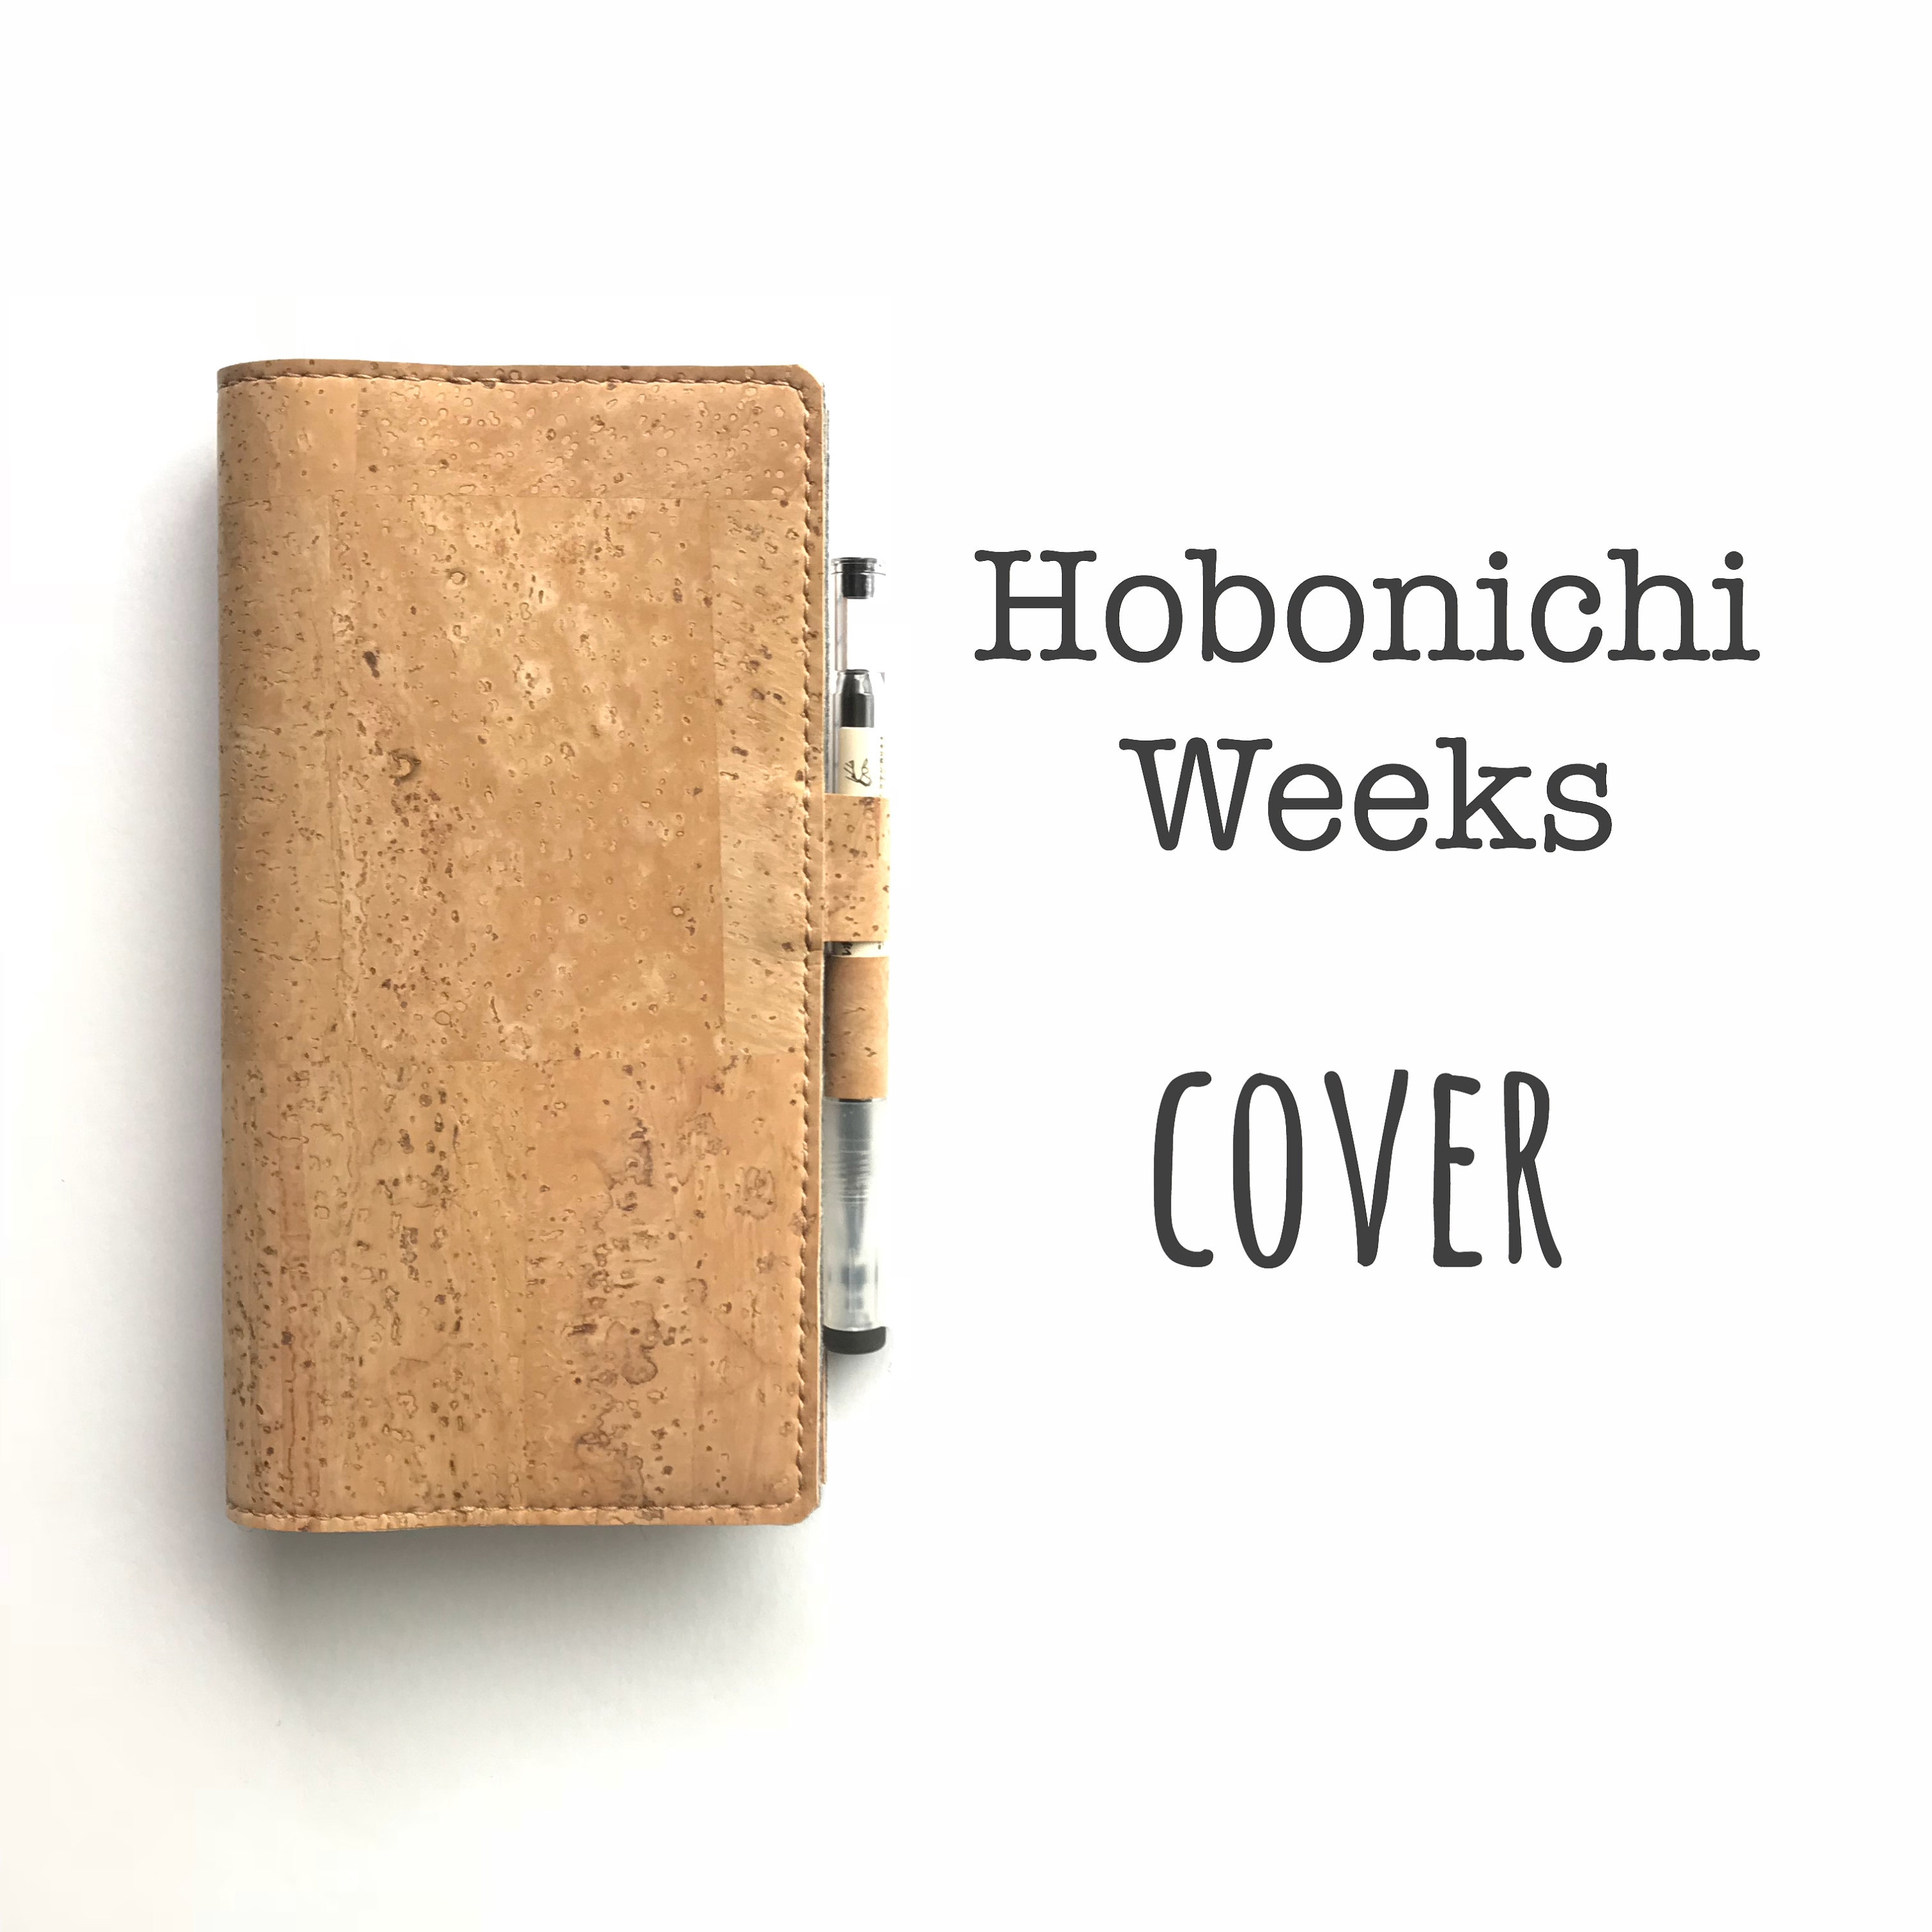 Hobonichi Weeks Cover, Hobonichi Weeks Sleeve, Agenda Cover